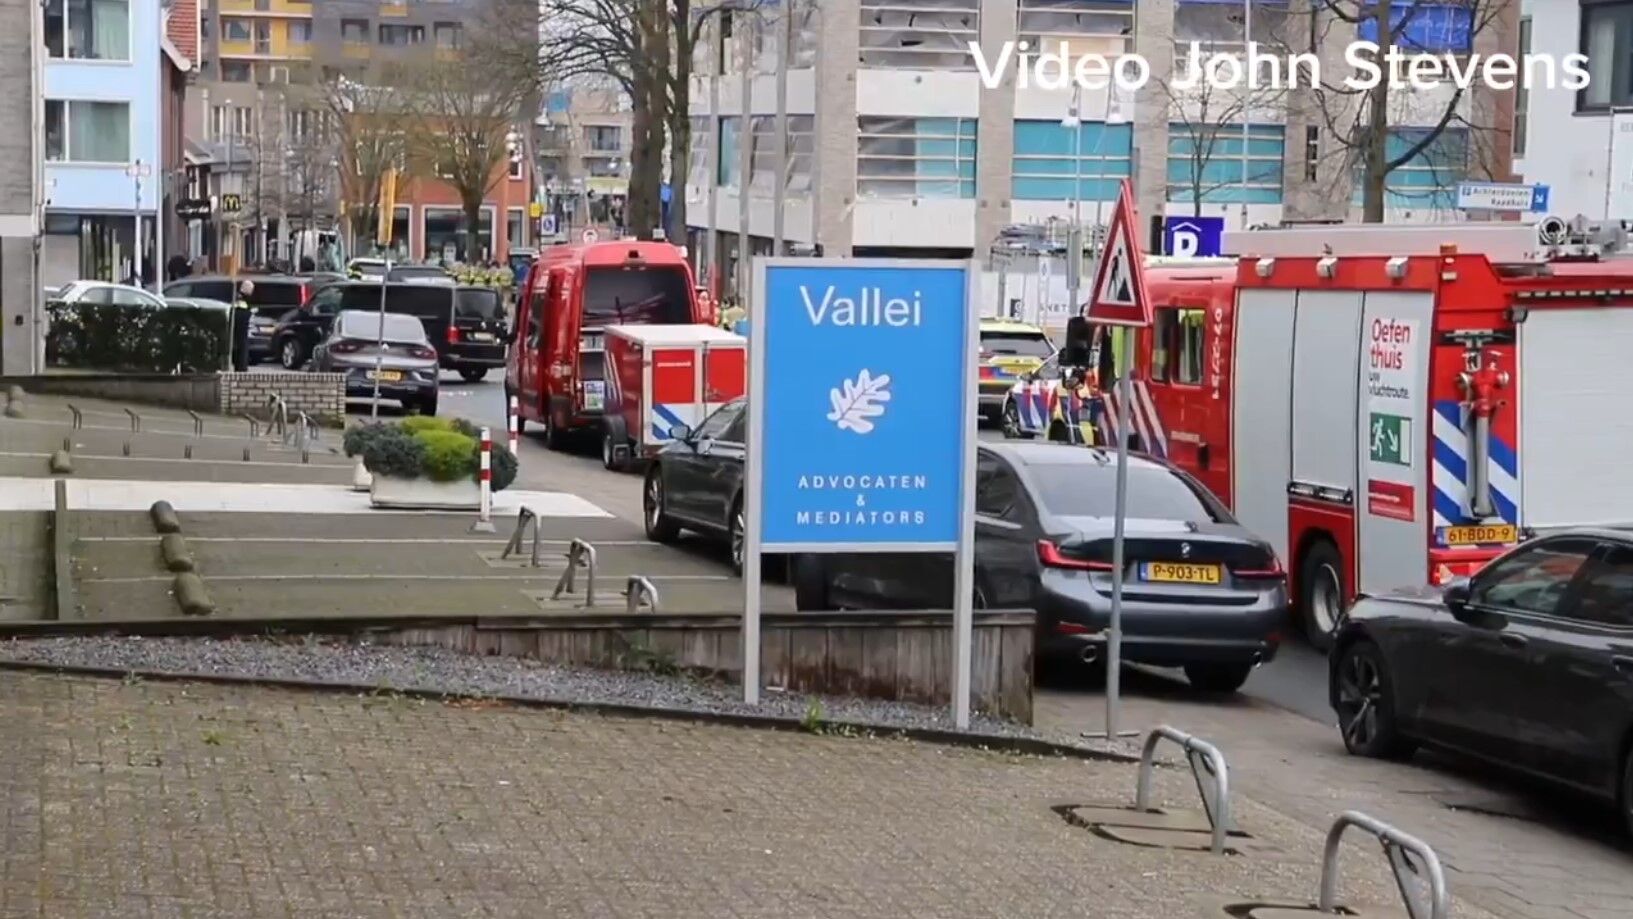 В кафе в Нидерландах неизвестный захватил заложников, были эвакуированы 150 домов: все подробности. Фото и видео